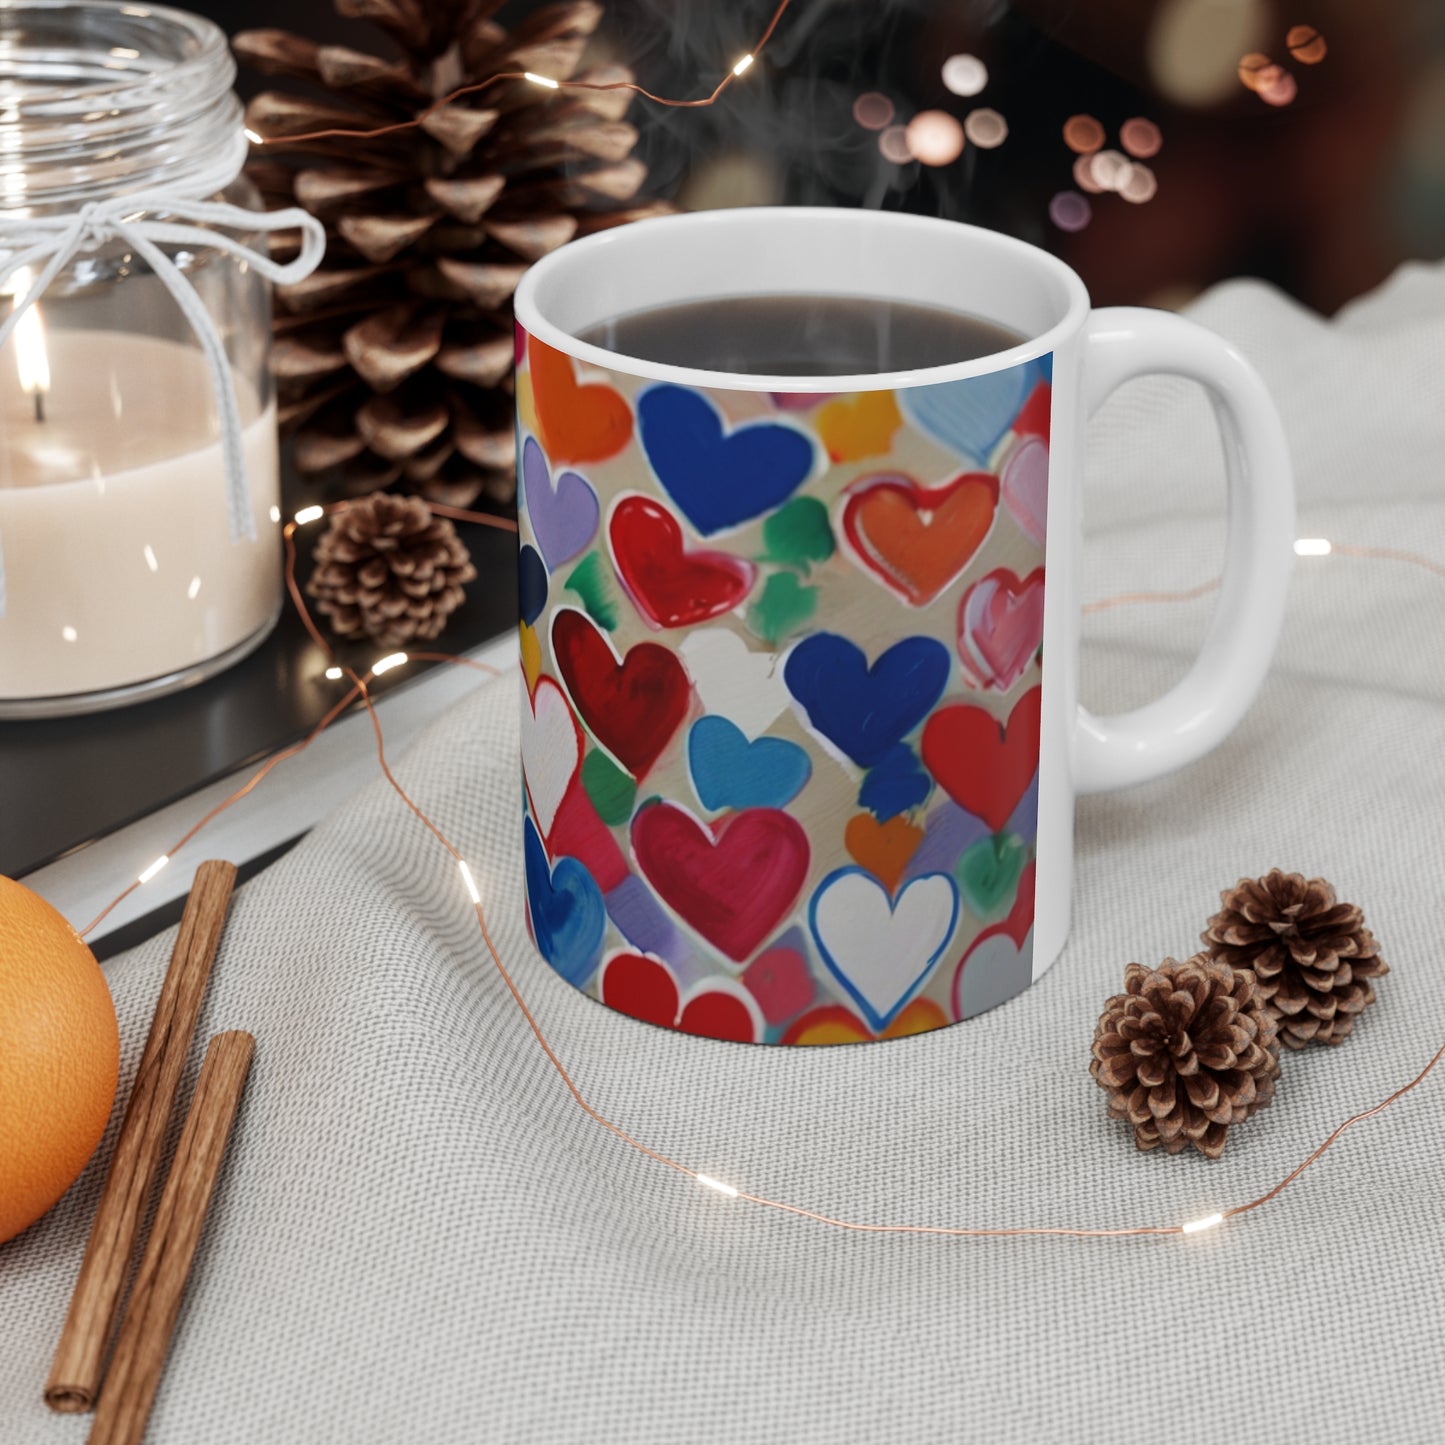 Messy Colourful Mini Love Hearts Mug - Ceramic Coffee Mug 11oz